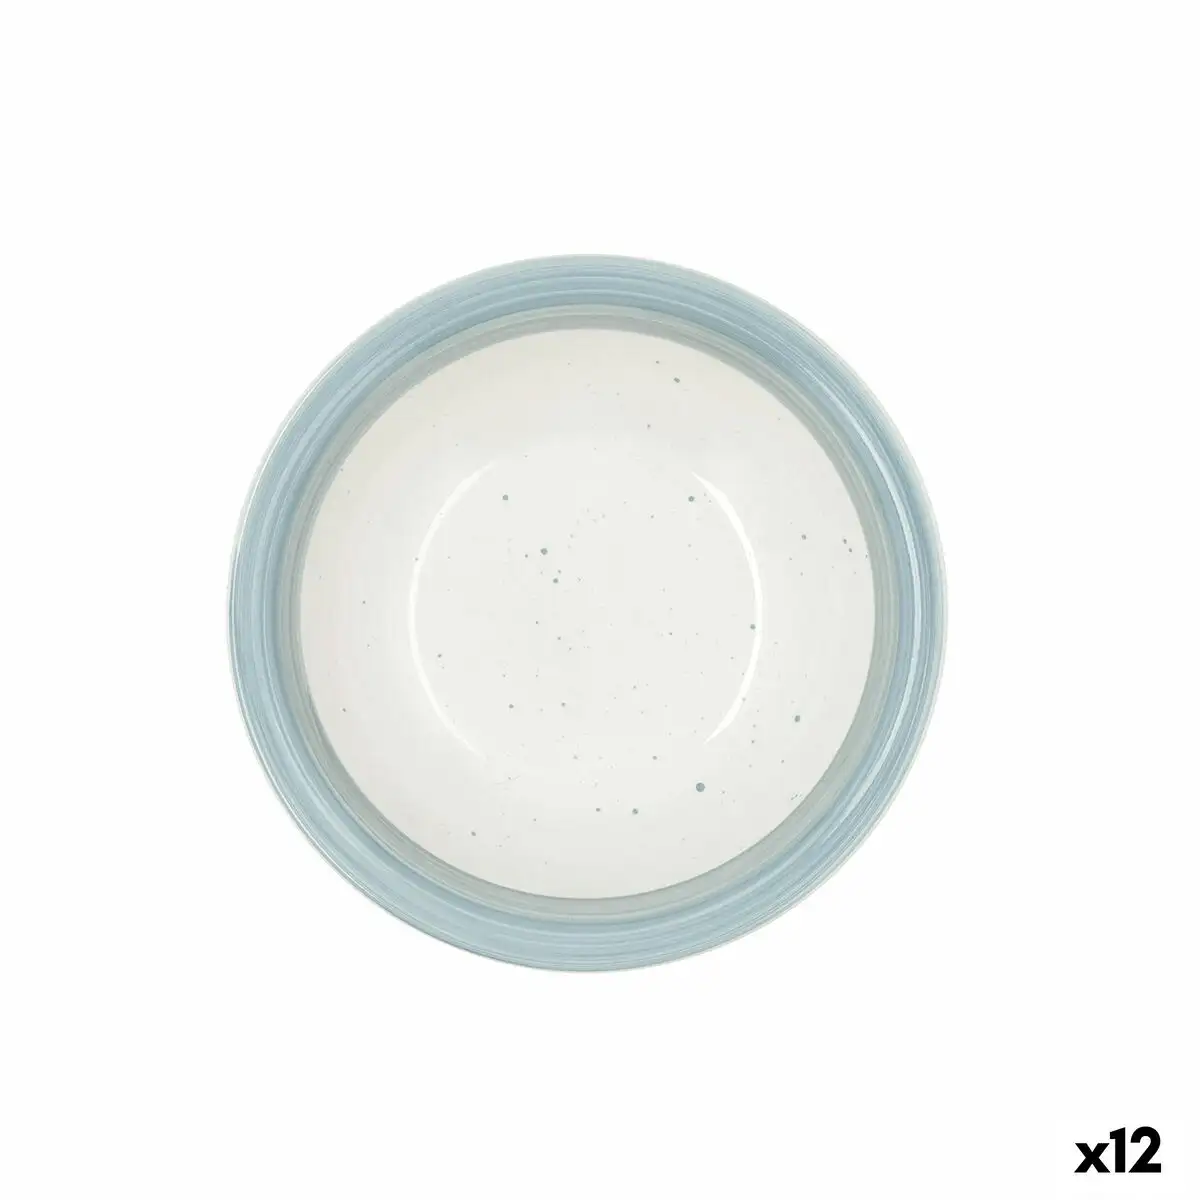 Assiette creuse quid allegra aqua ceramique bicolore o 21 5 cm 12 unites _3706. DIAYTAR SENEGAL - Où Choisir Devient une Découverte. Explorez notre boutique en ligne et trouvez des articles qui vous surprennent et vous ravissent à chaque clic.